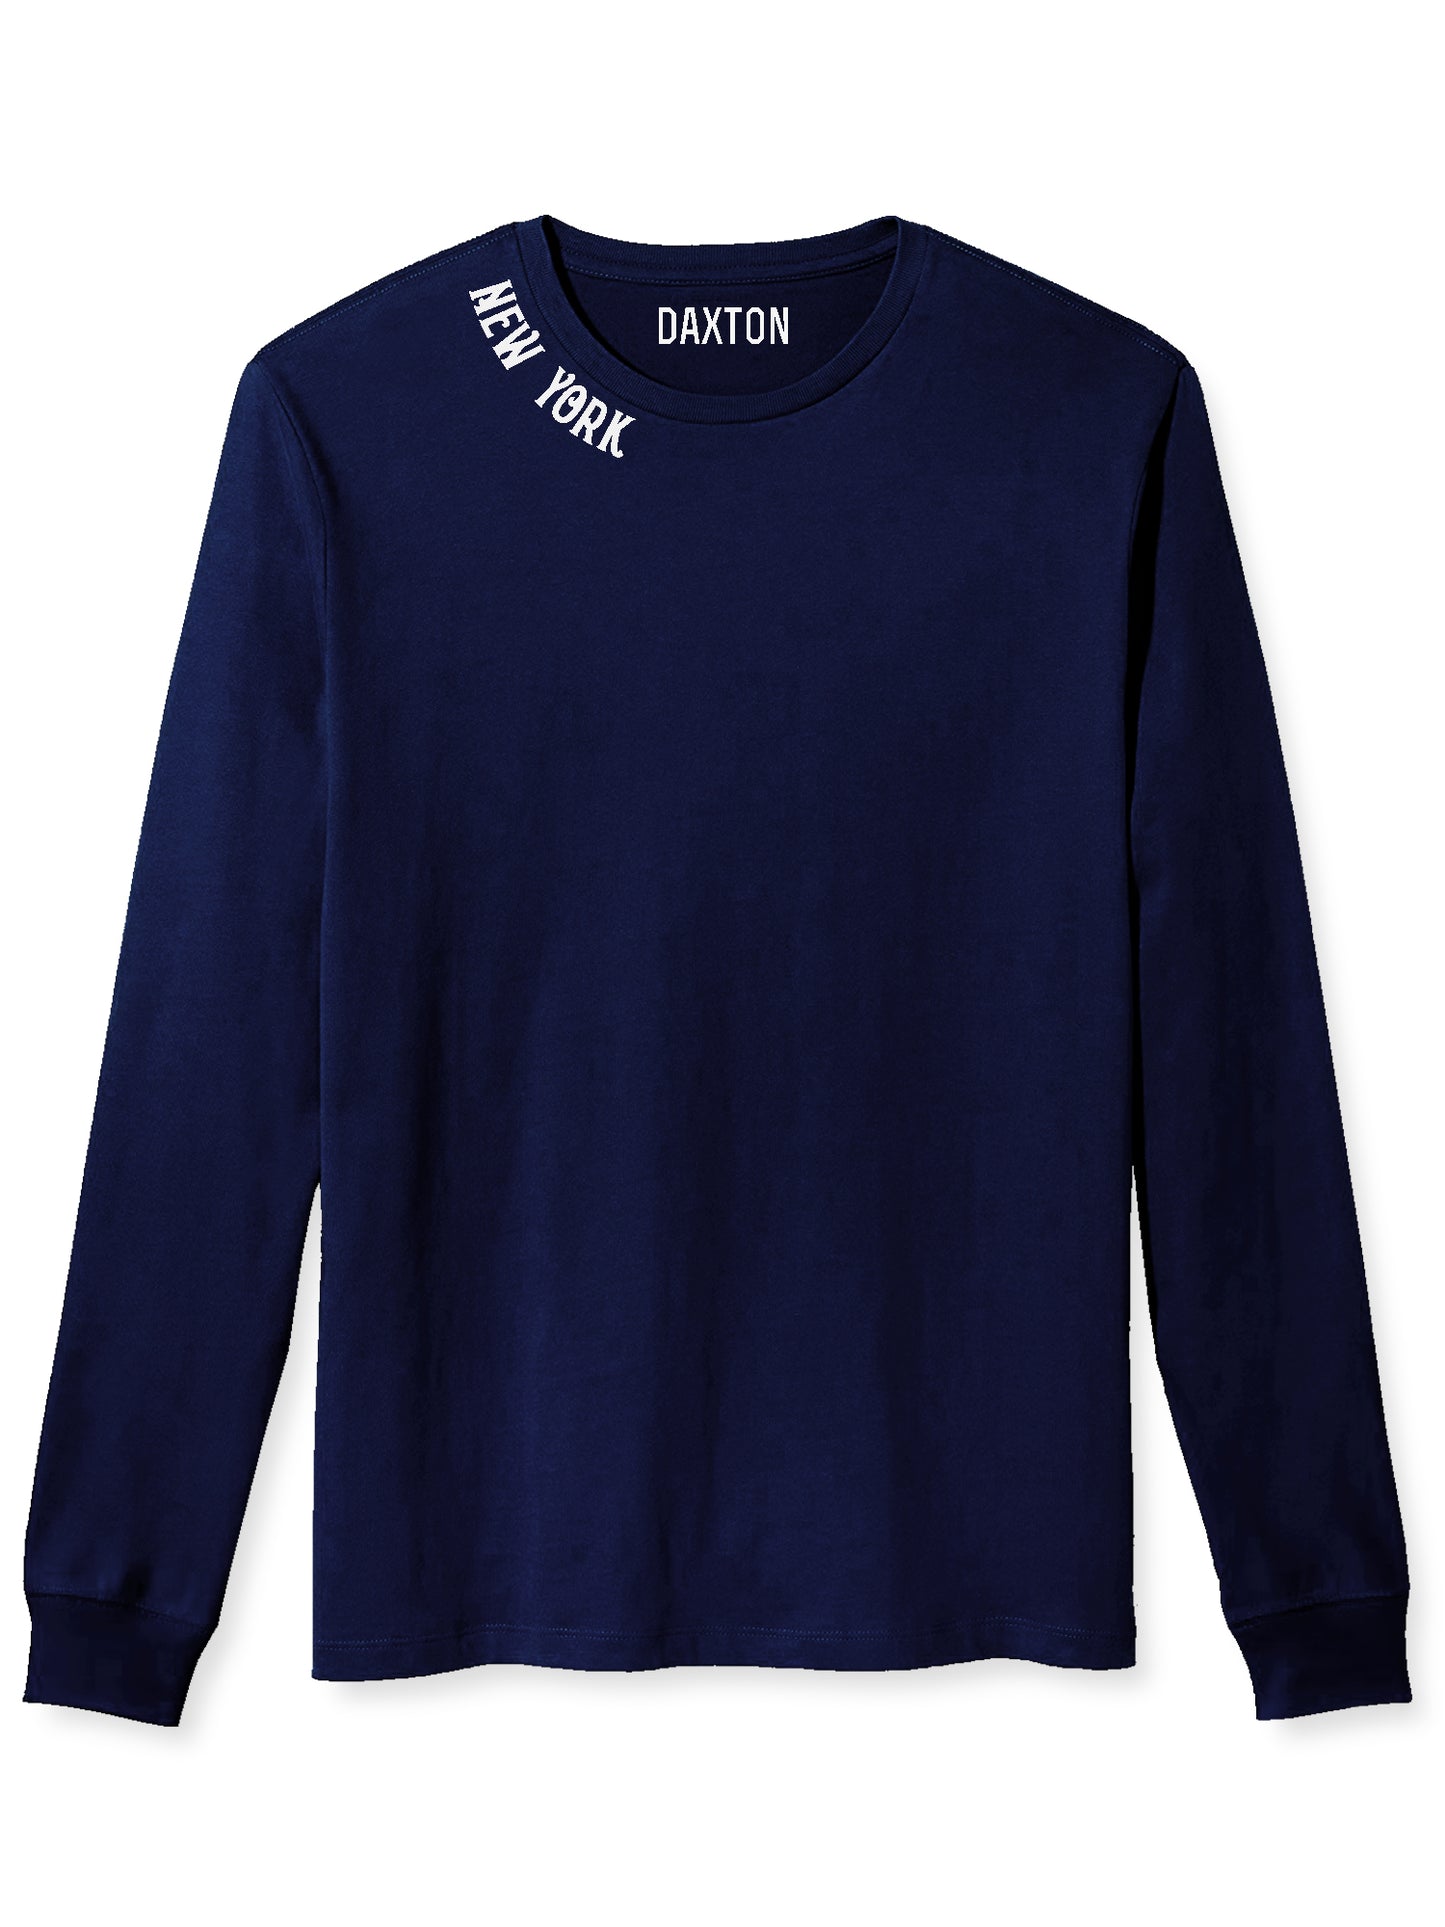 Daxton Premium New York Men Long Sleeves T Shirt Ultra Soft Medium Weight Cotton